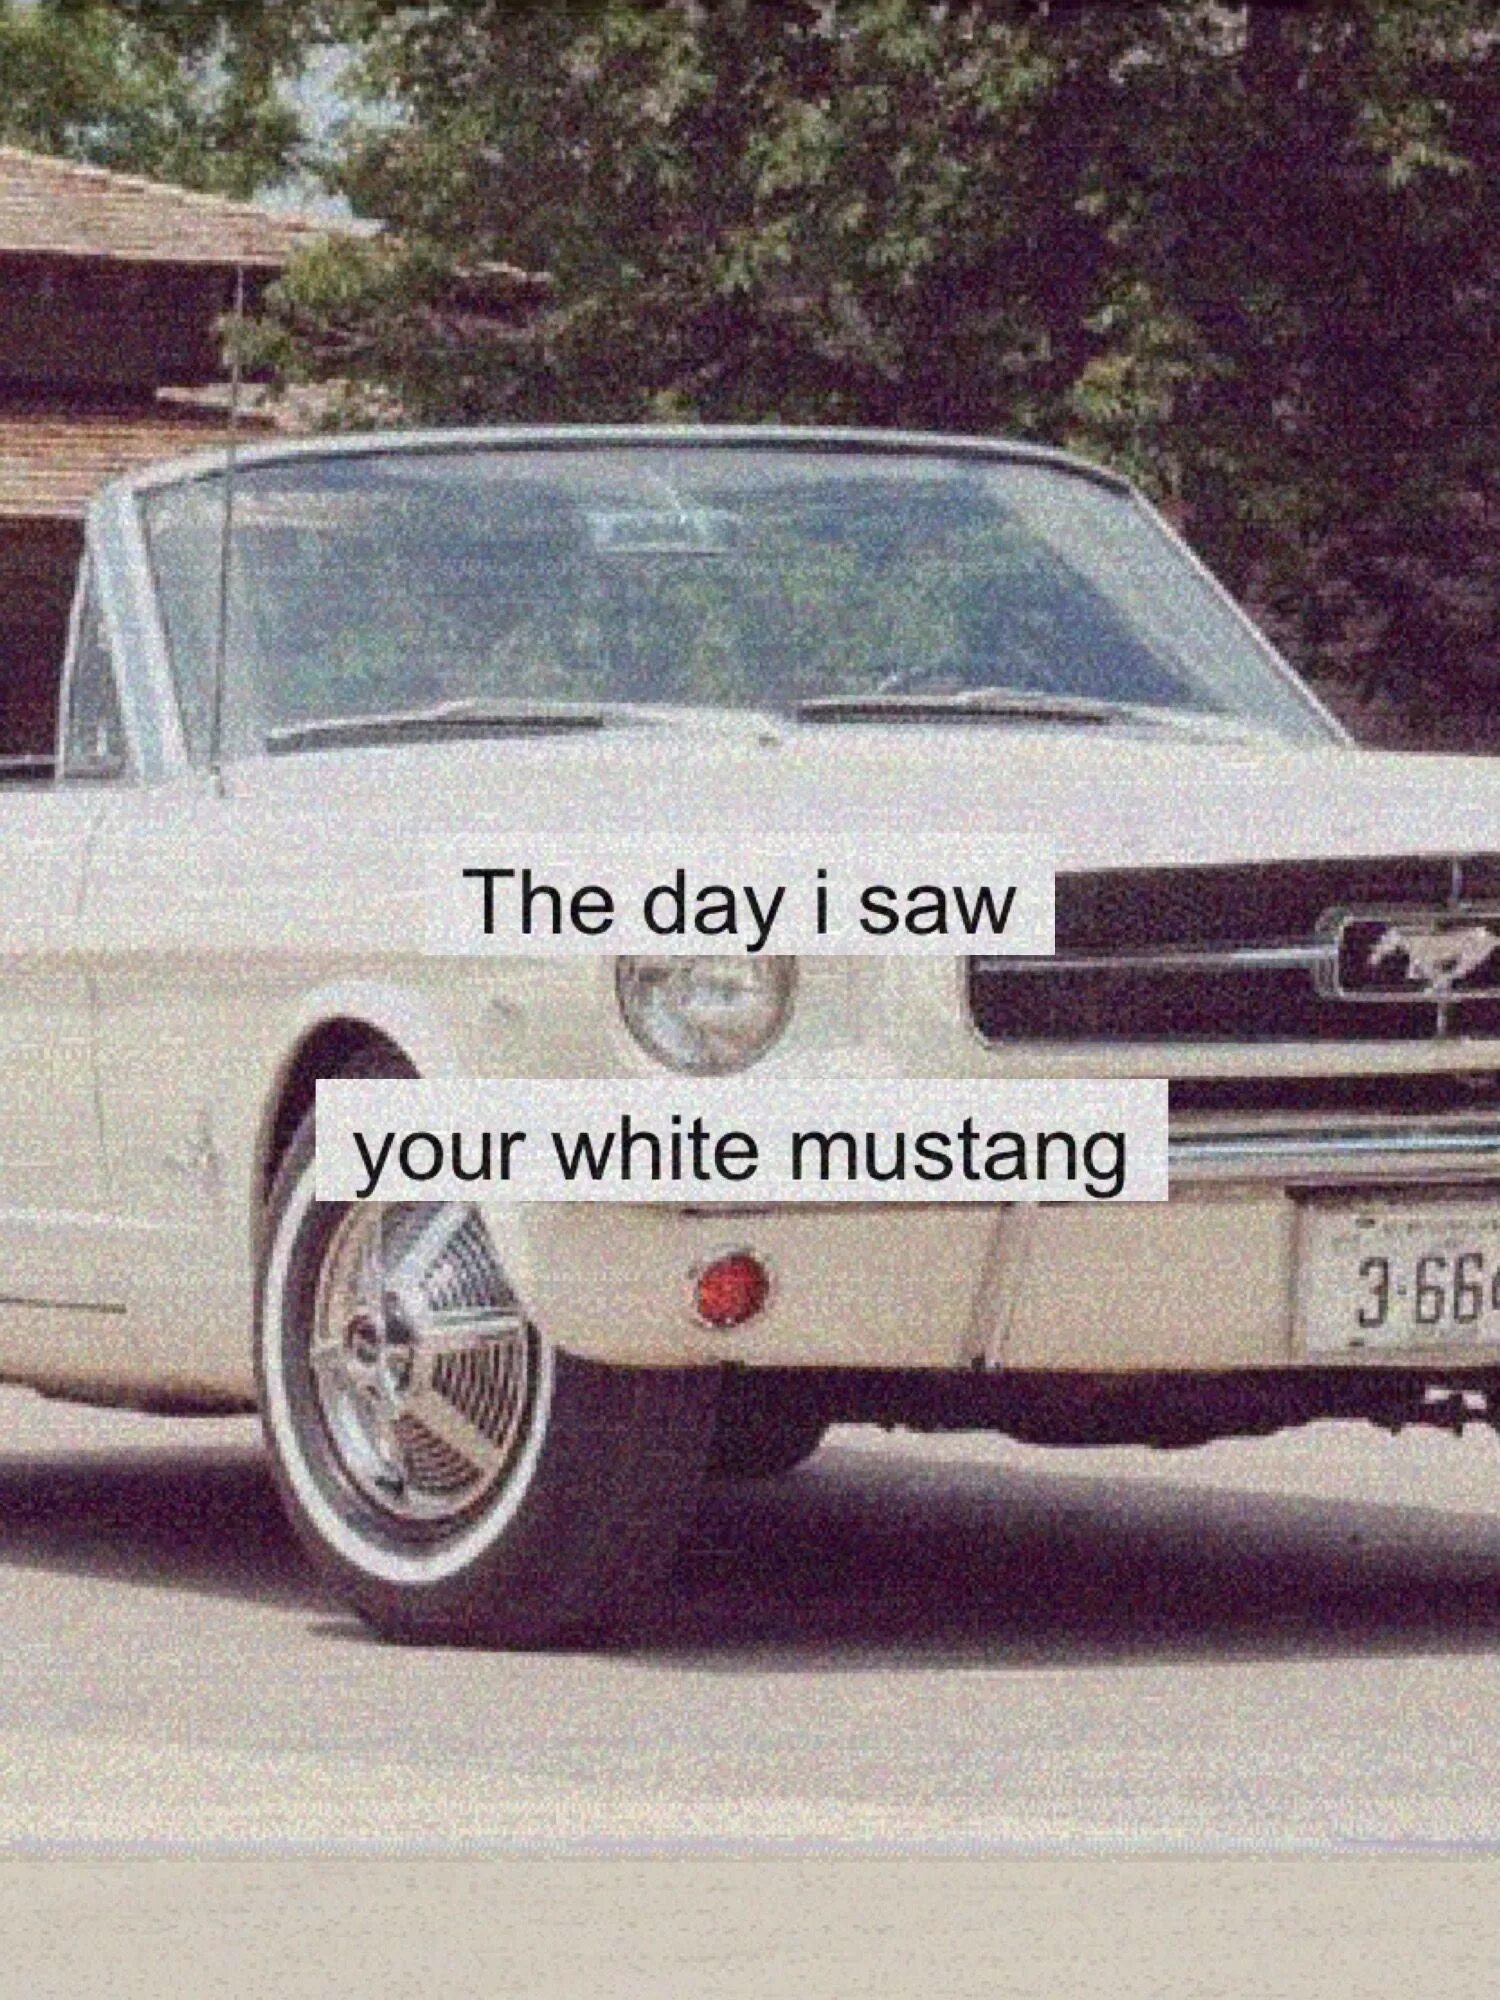 White mustang lana. Lana del Rey White Mustang. Форд дель Рей кабриолет.